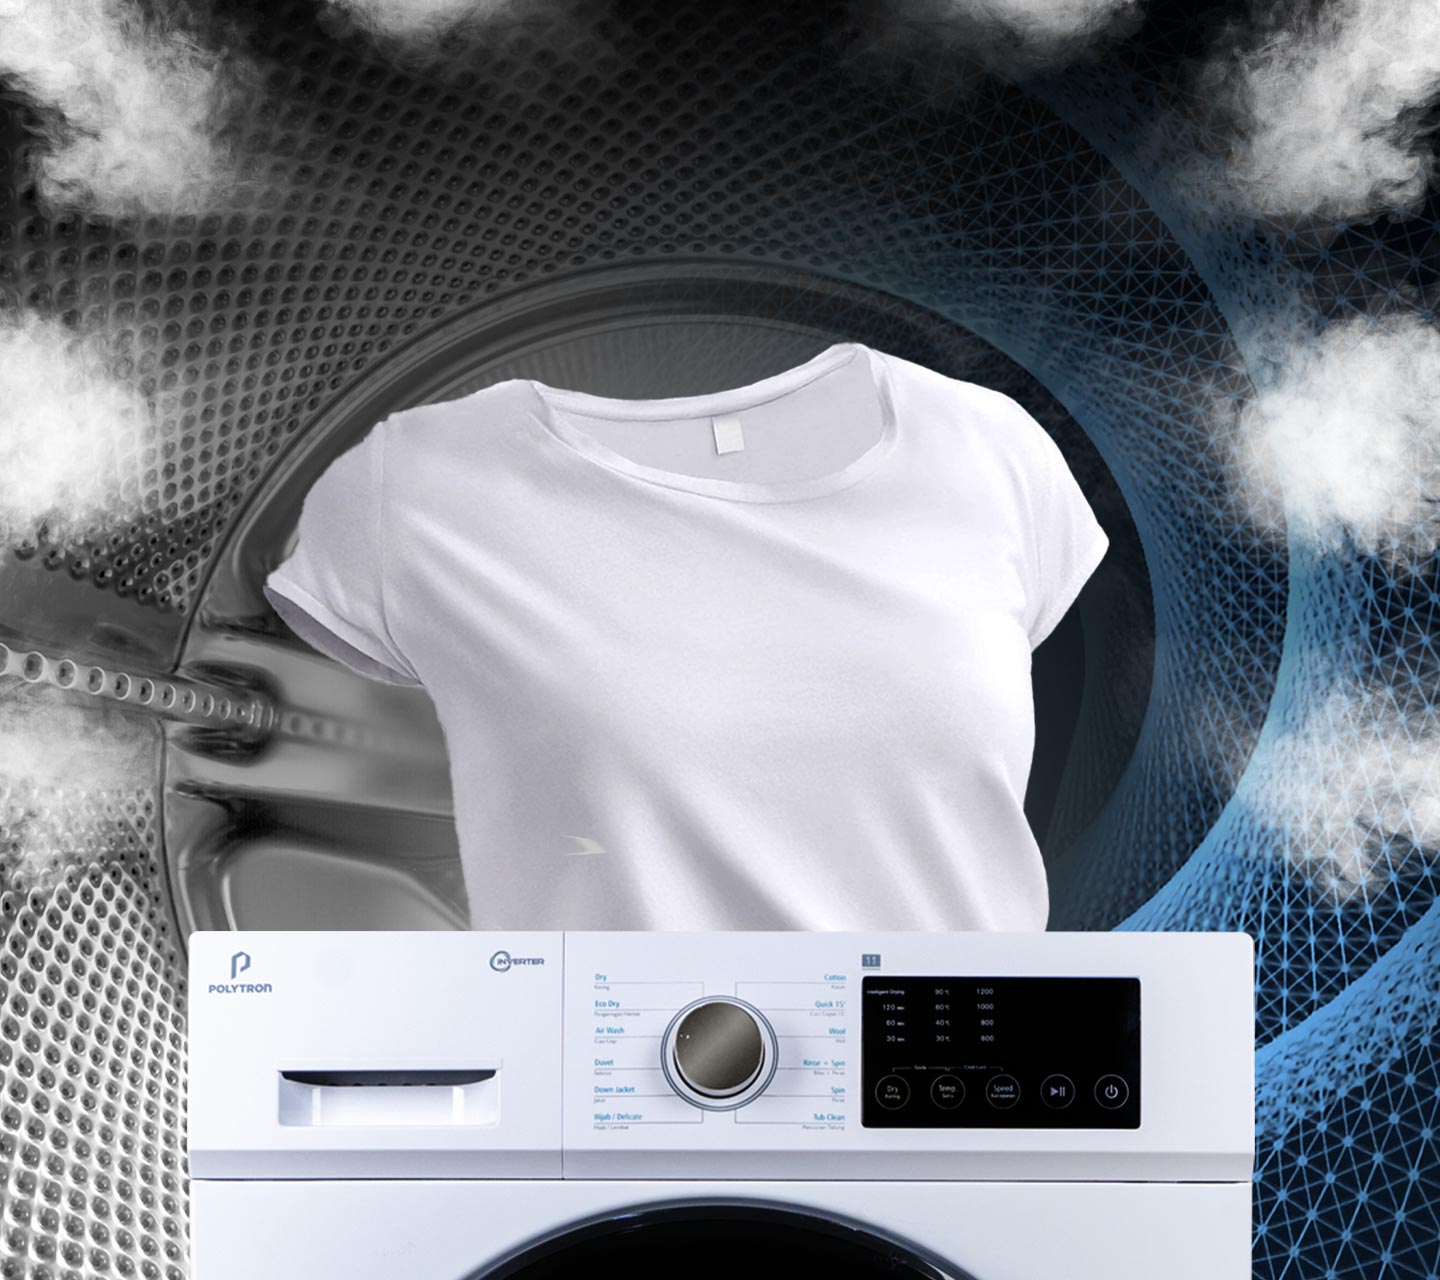 Mesin Cuci Wonder wash dengan fungsi 2 in 1, mencuci sekaligus mengeringkan pakaian tanpa di jemur